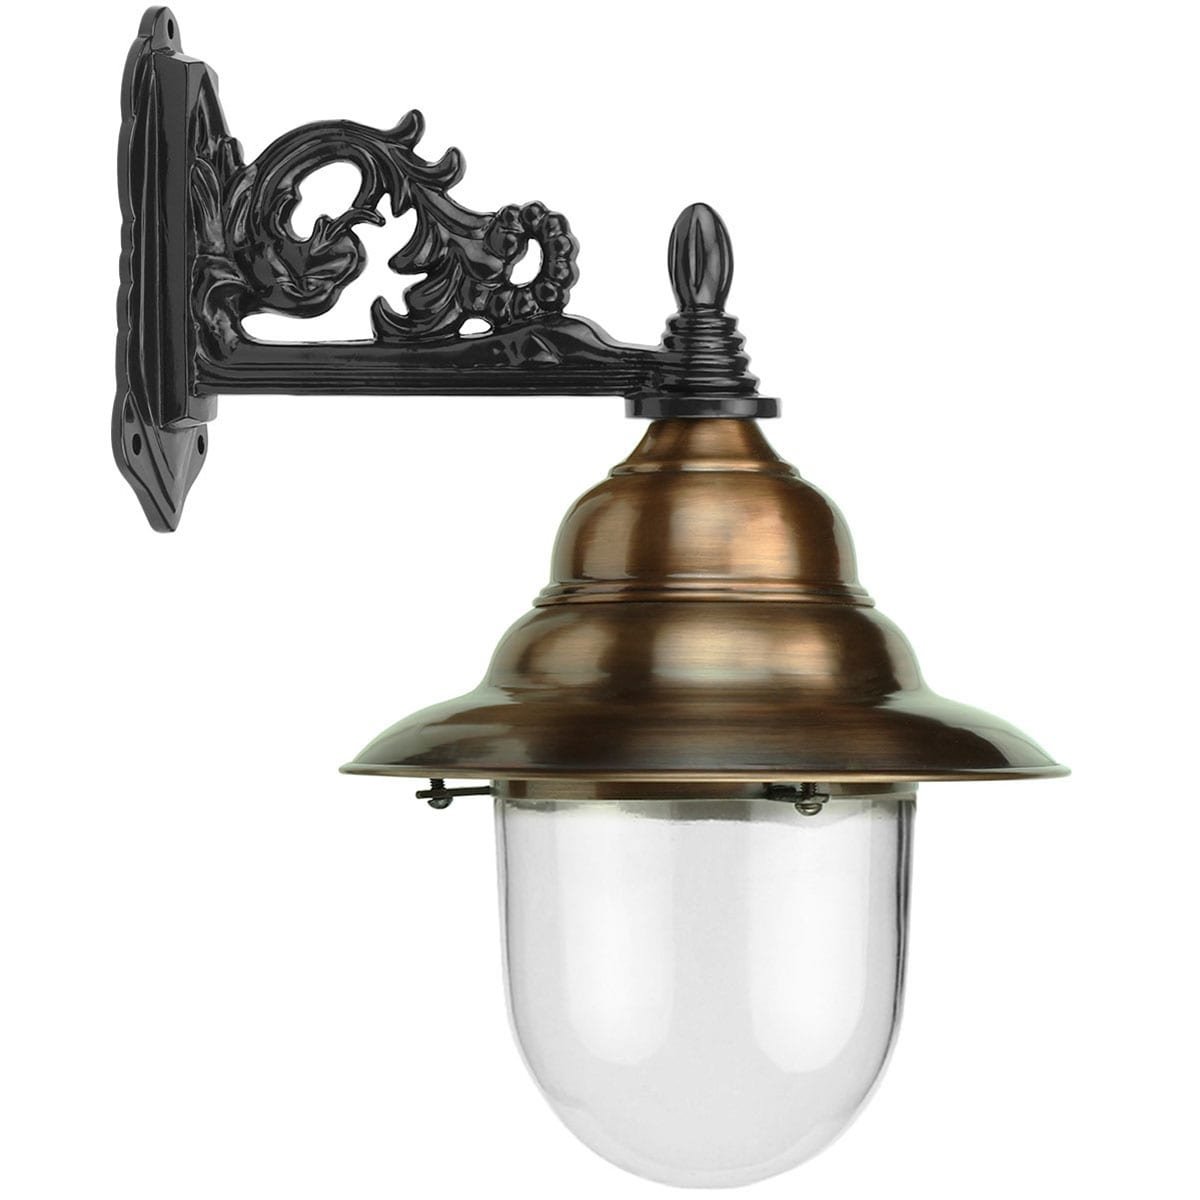 Buitenlampen Klassiek Landelijk Stallamp hangend koper Strijen - 52 cm